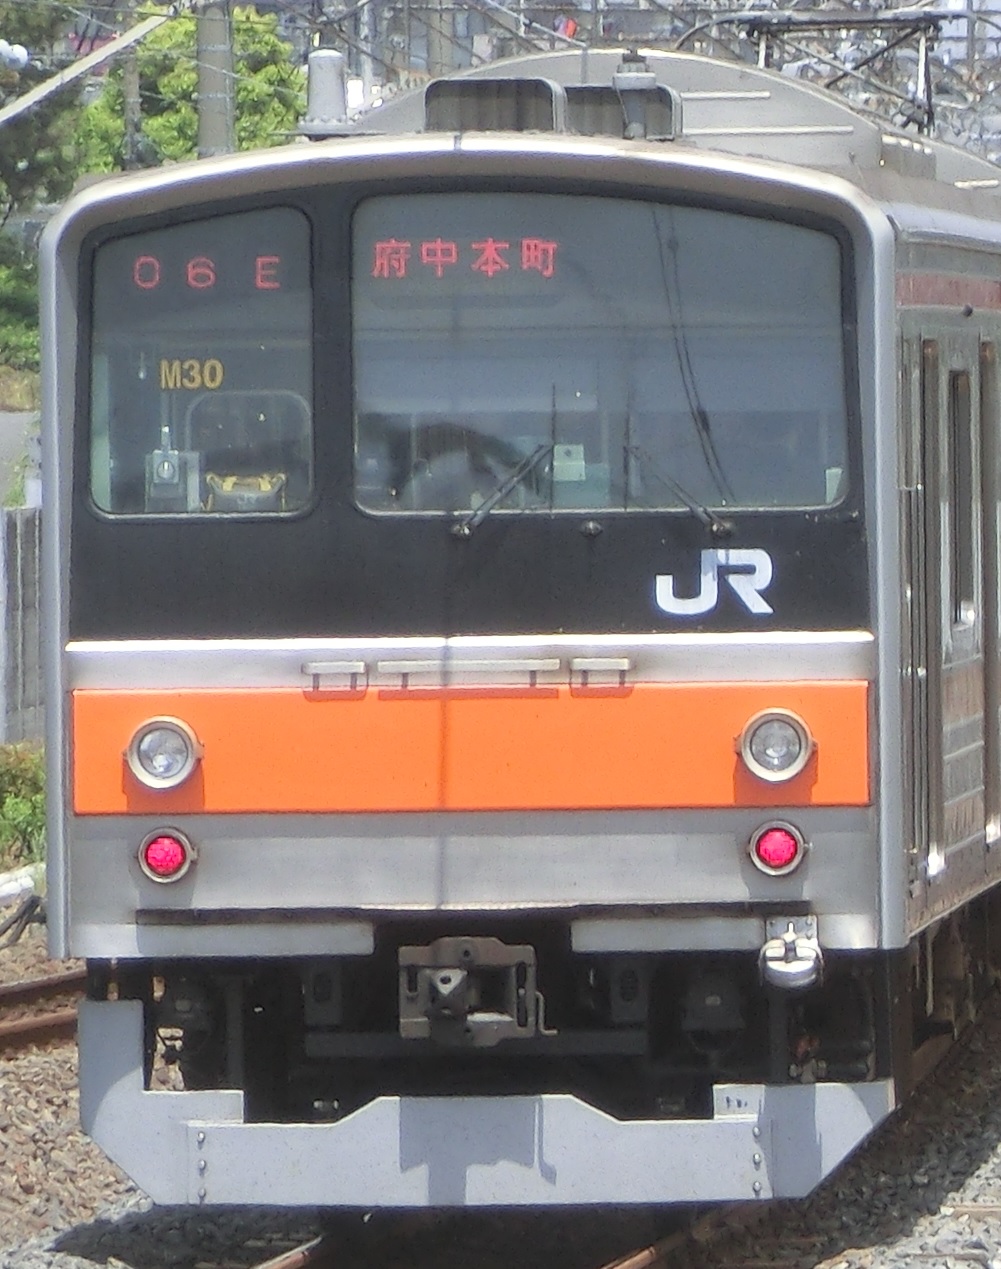 205-ケヨM30元.jpg